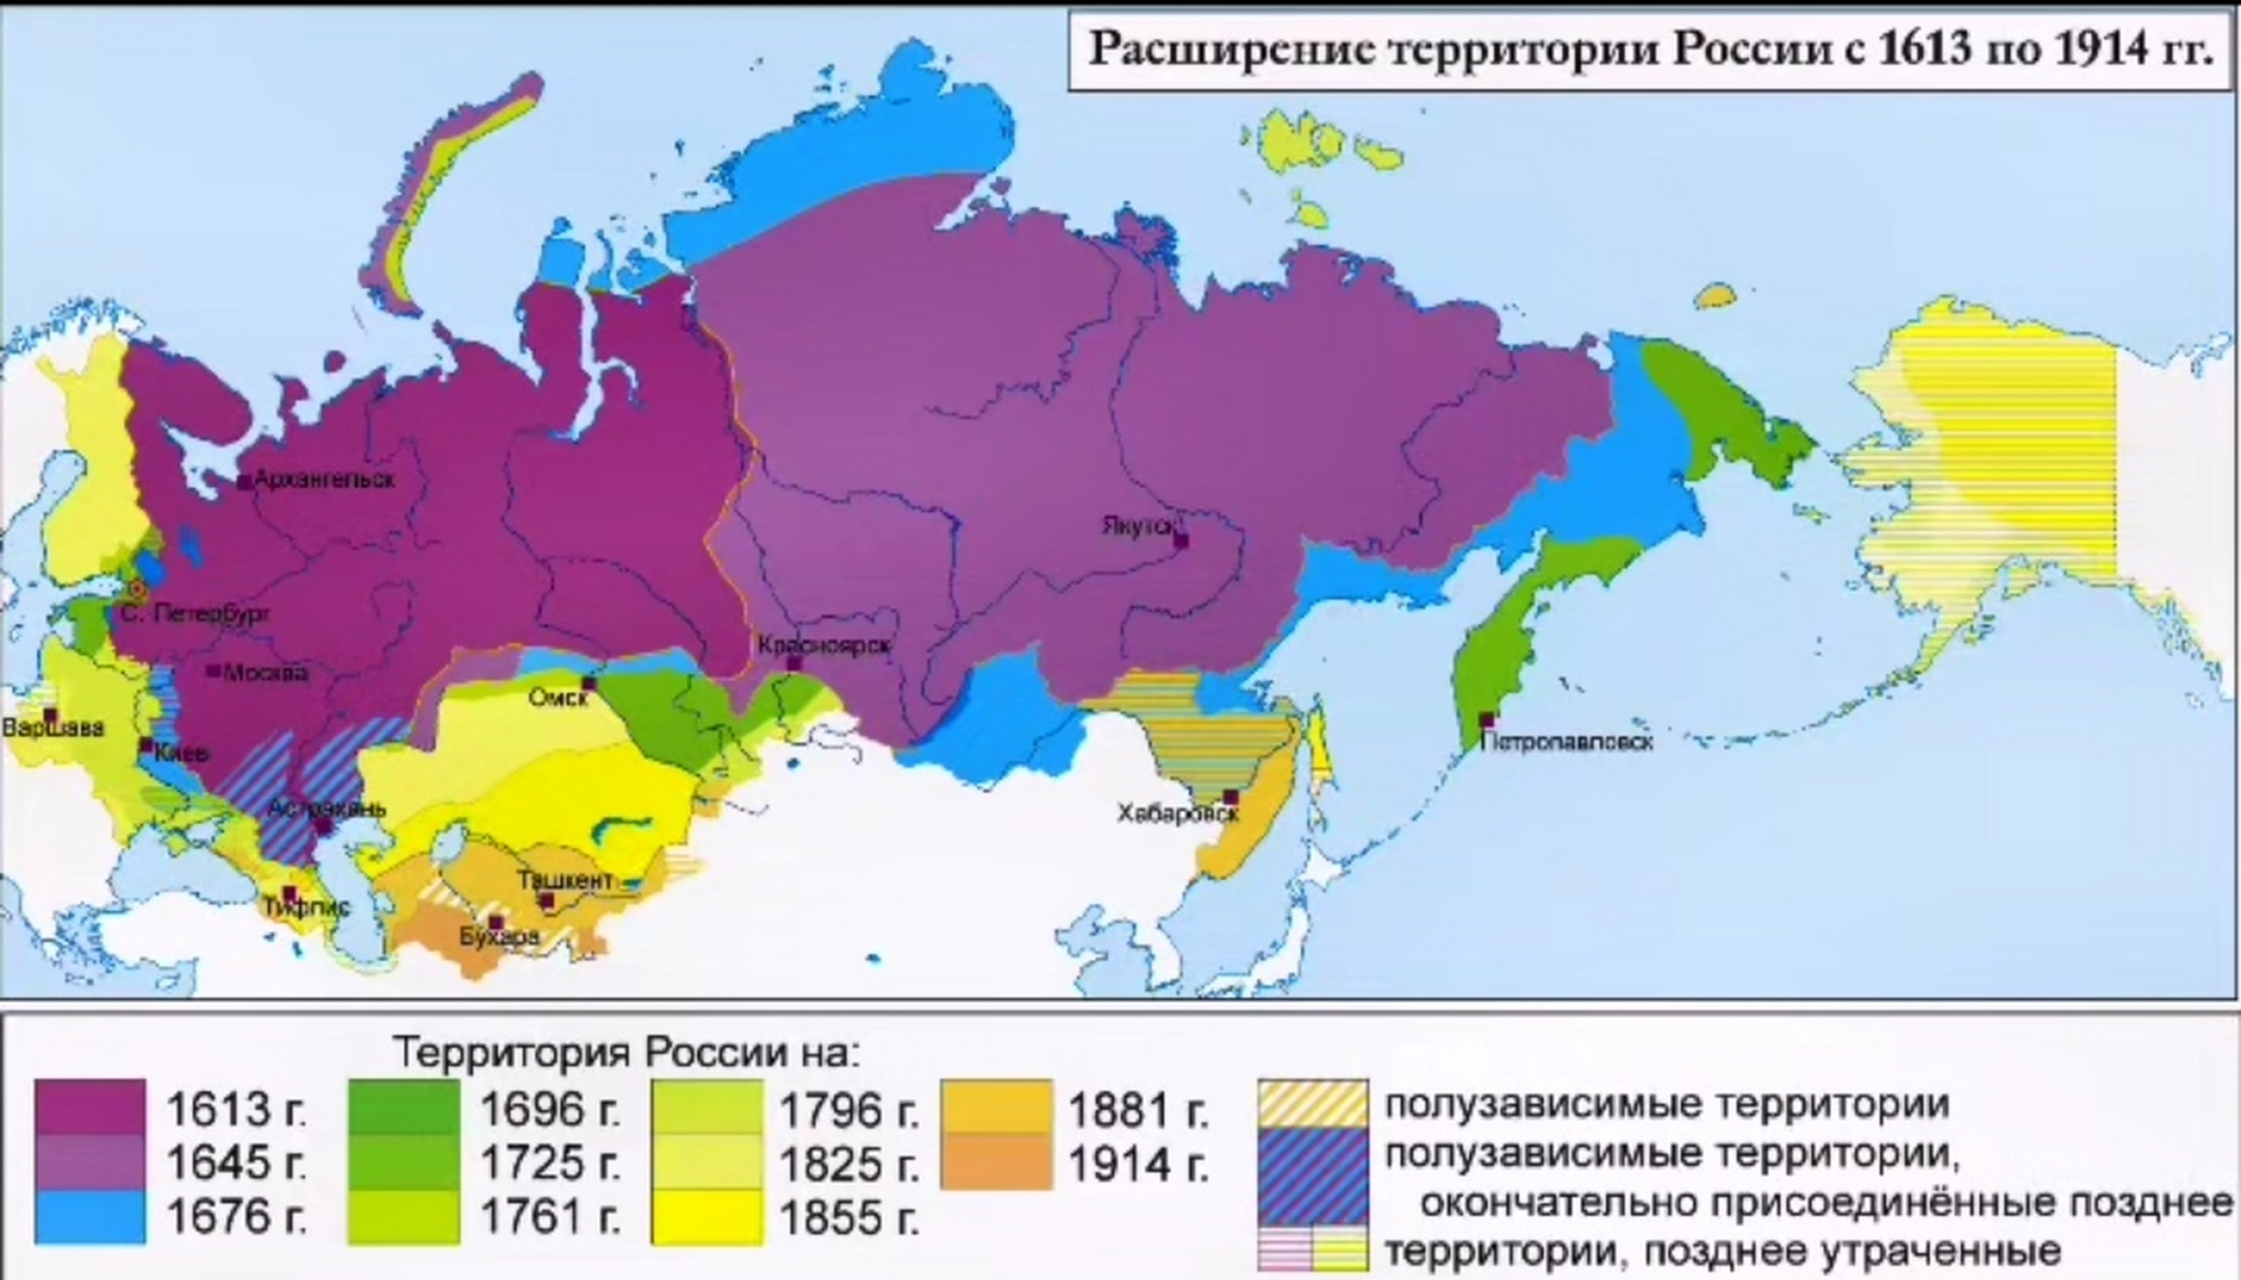 沙俄领土扩张示意图